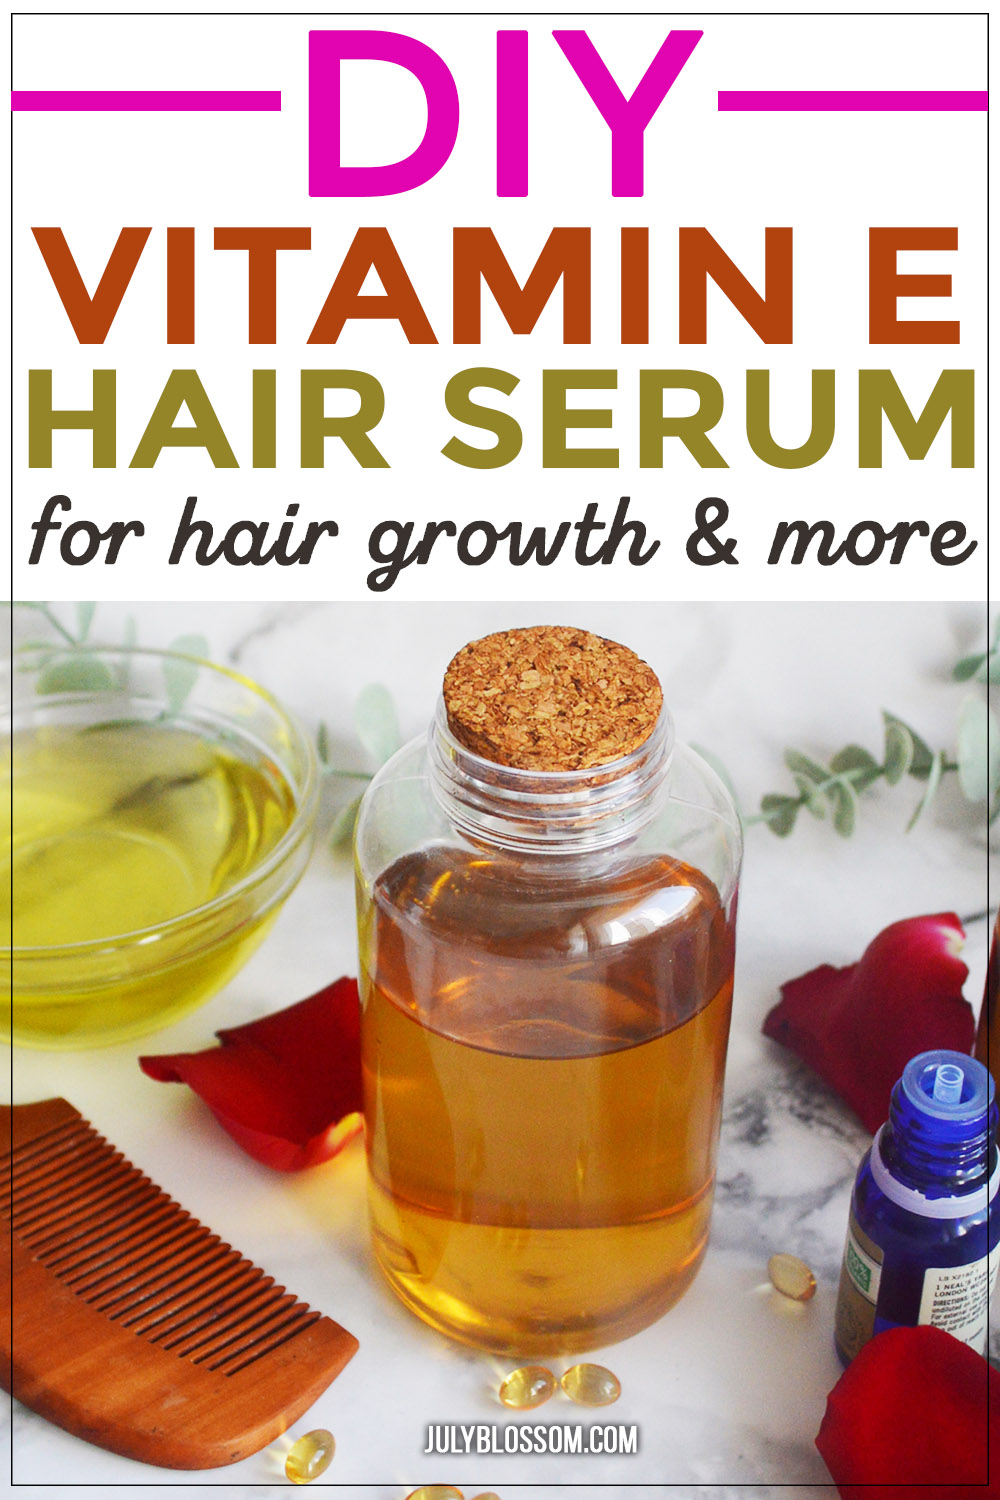 DIY Vitamin E Hair Serum for Hair Growth - ♡ July Blossom ♡